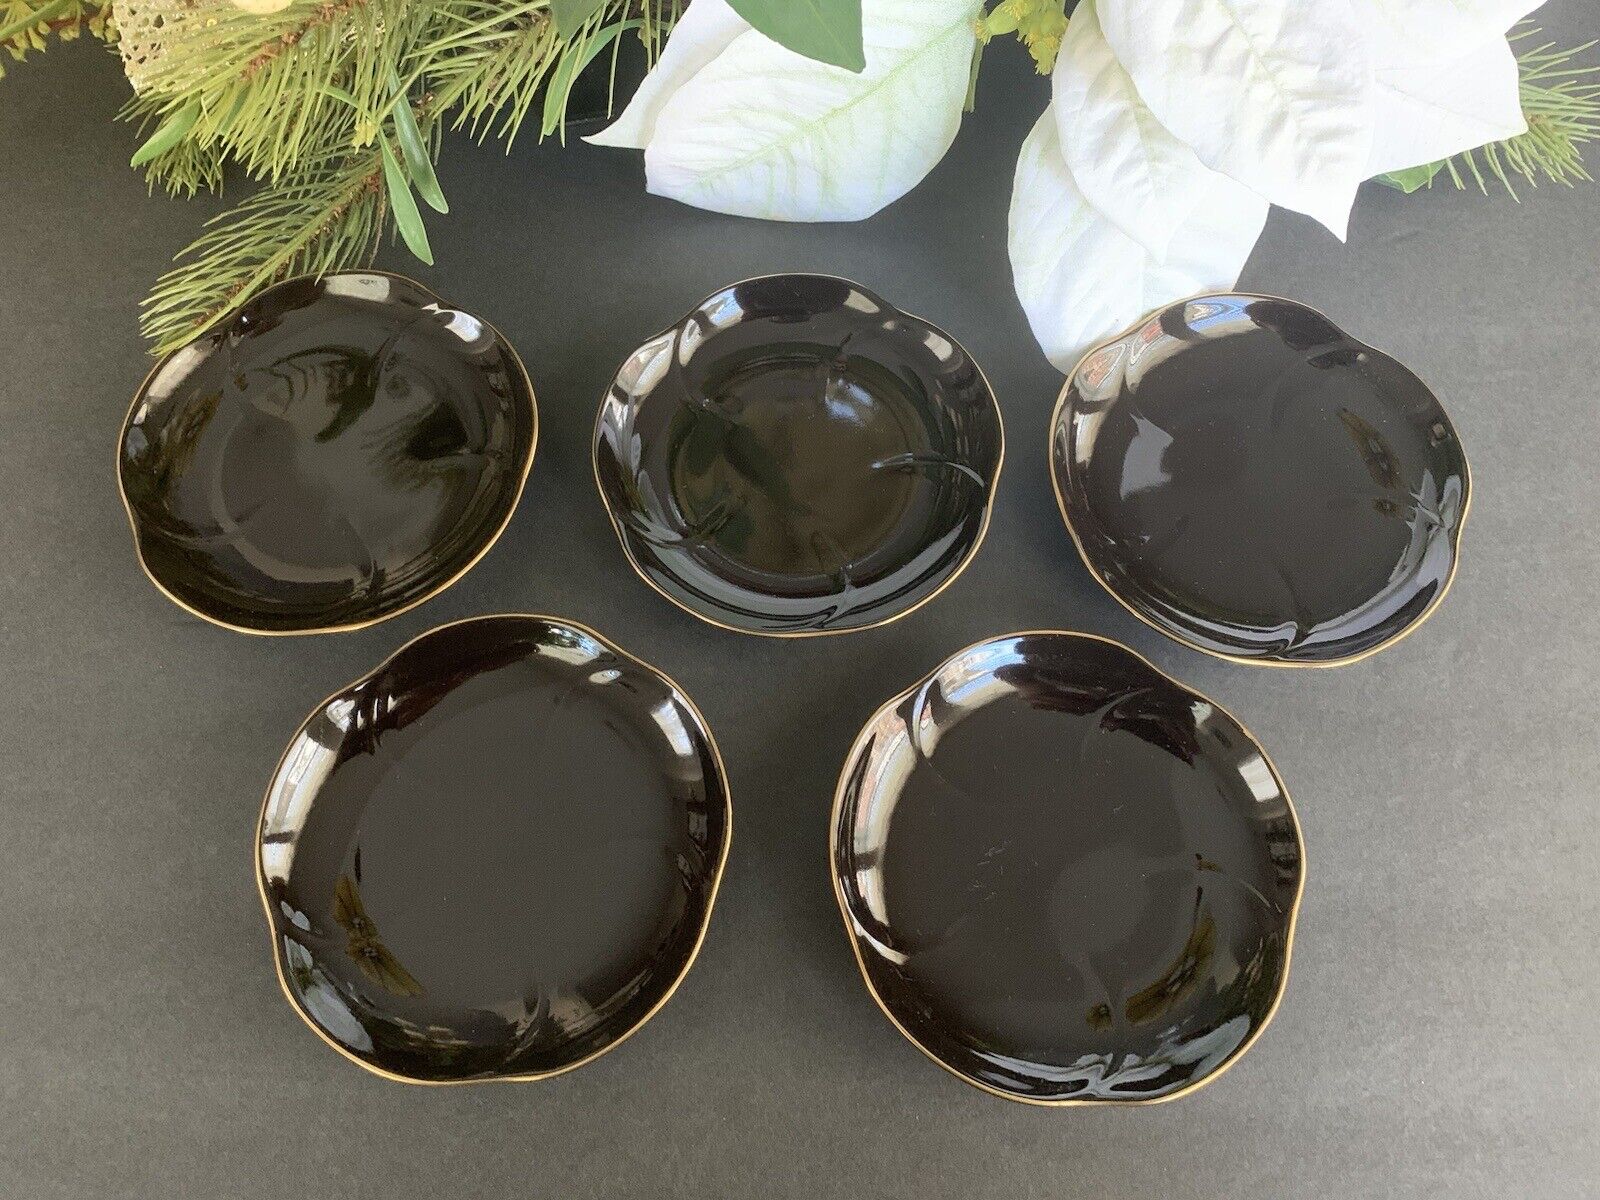 Japanese Nishiyama 5pcs black flower shaped small plates with gold rim 4-7/8”